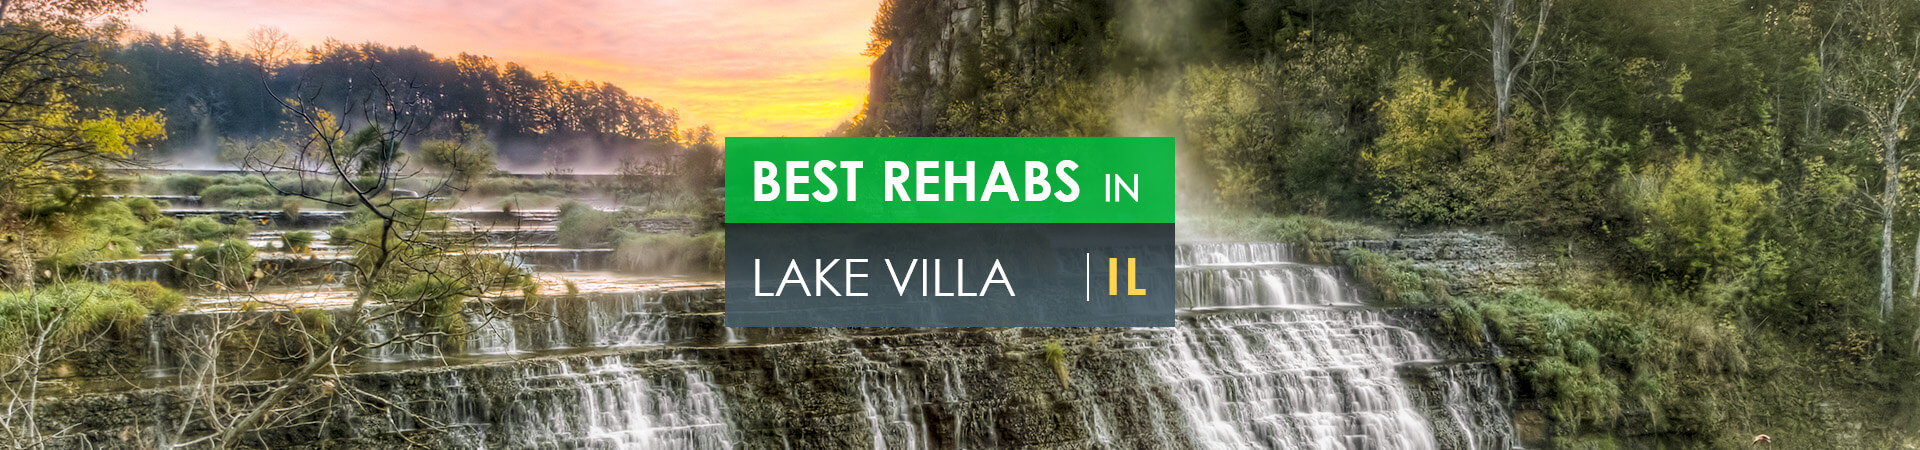 Best rehabs in Lake Villa, IL